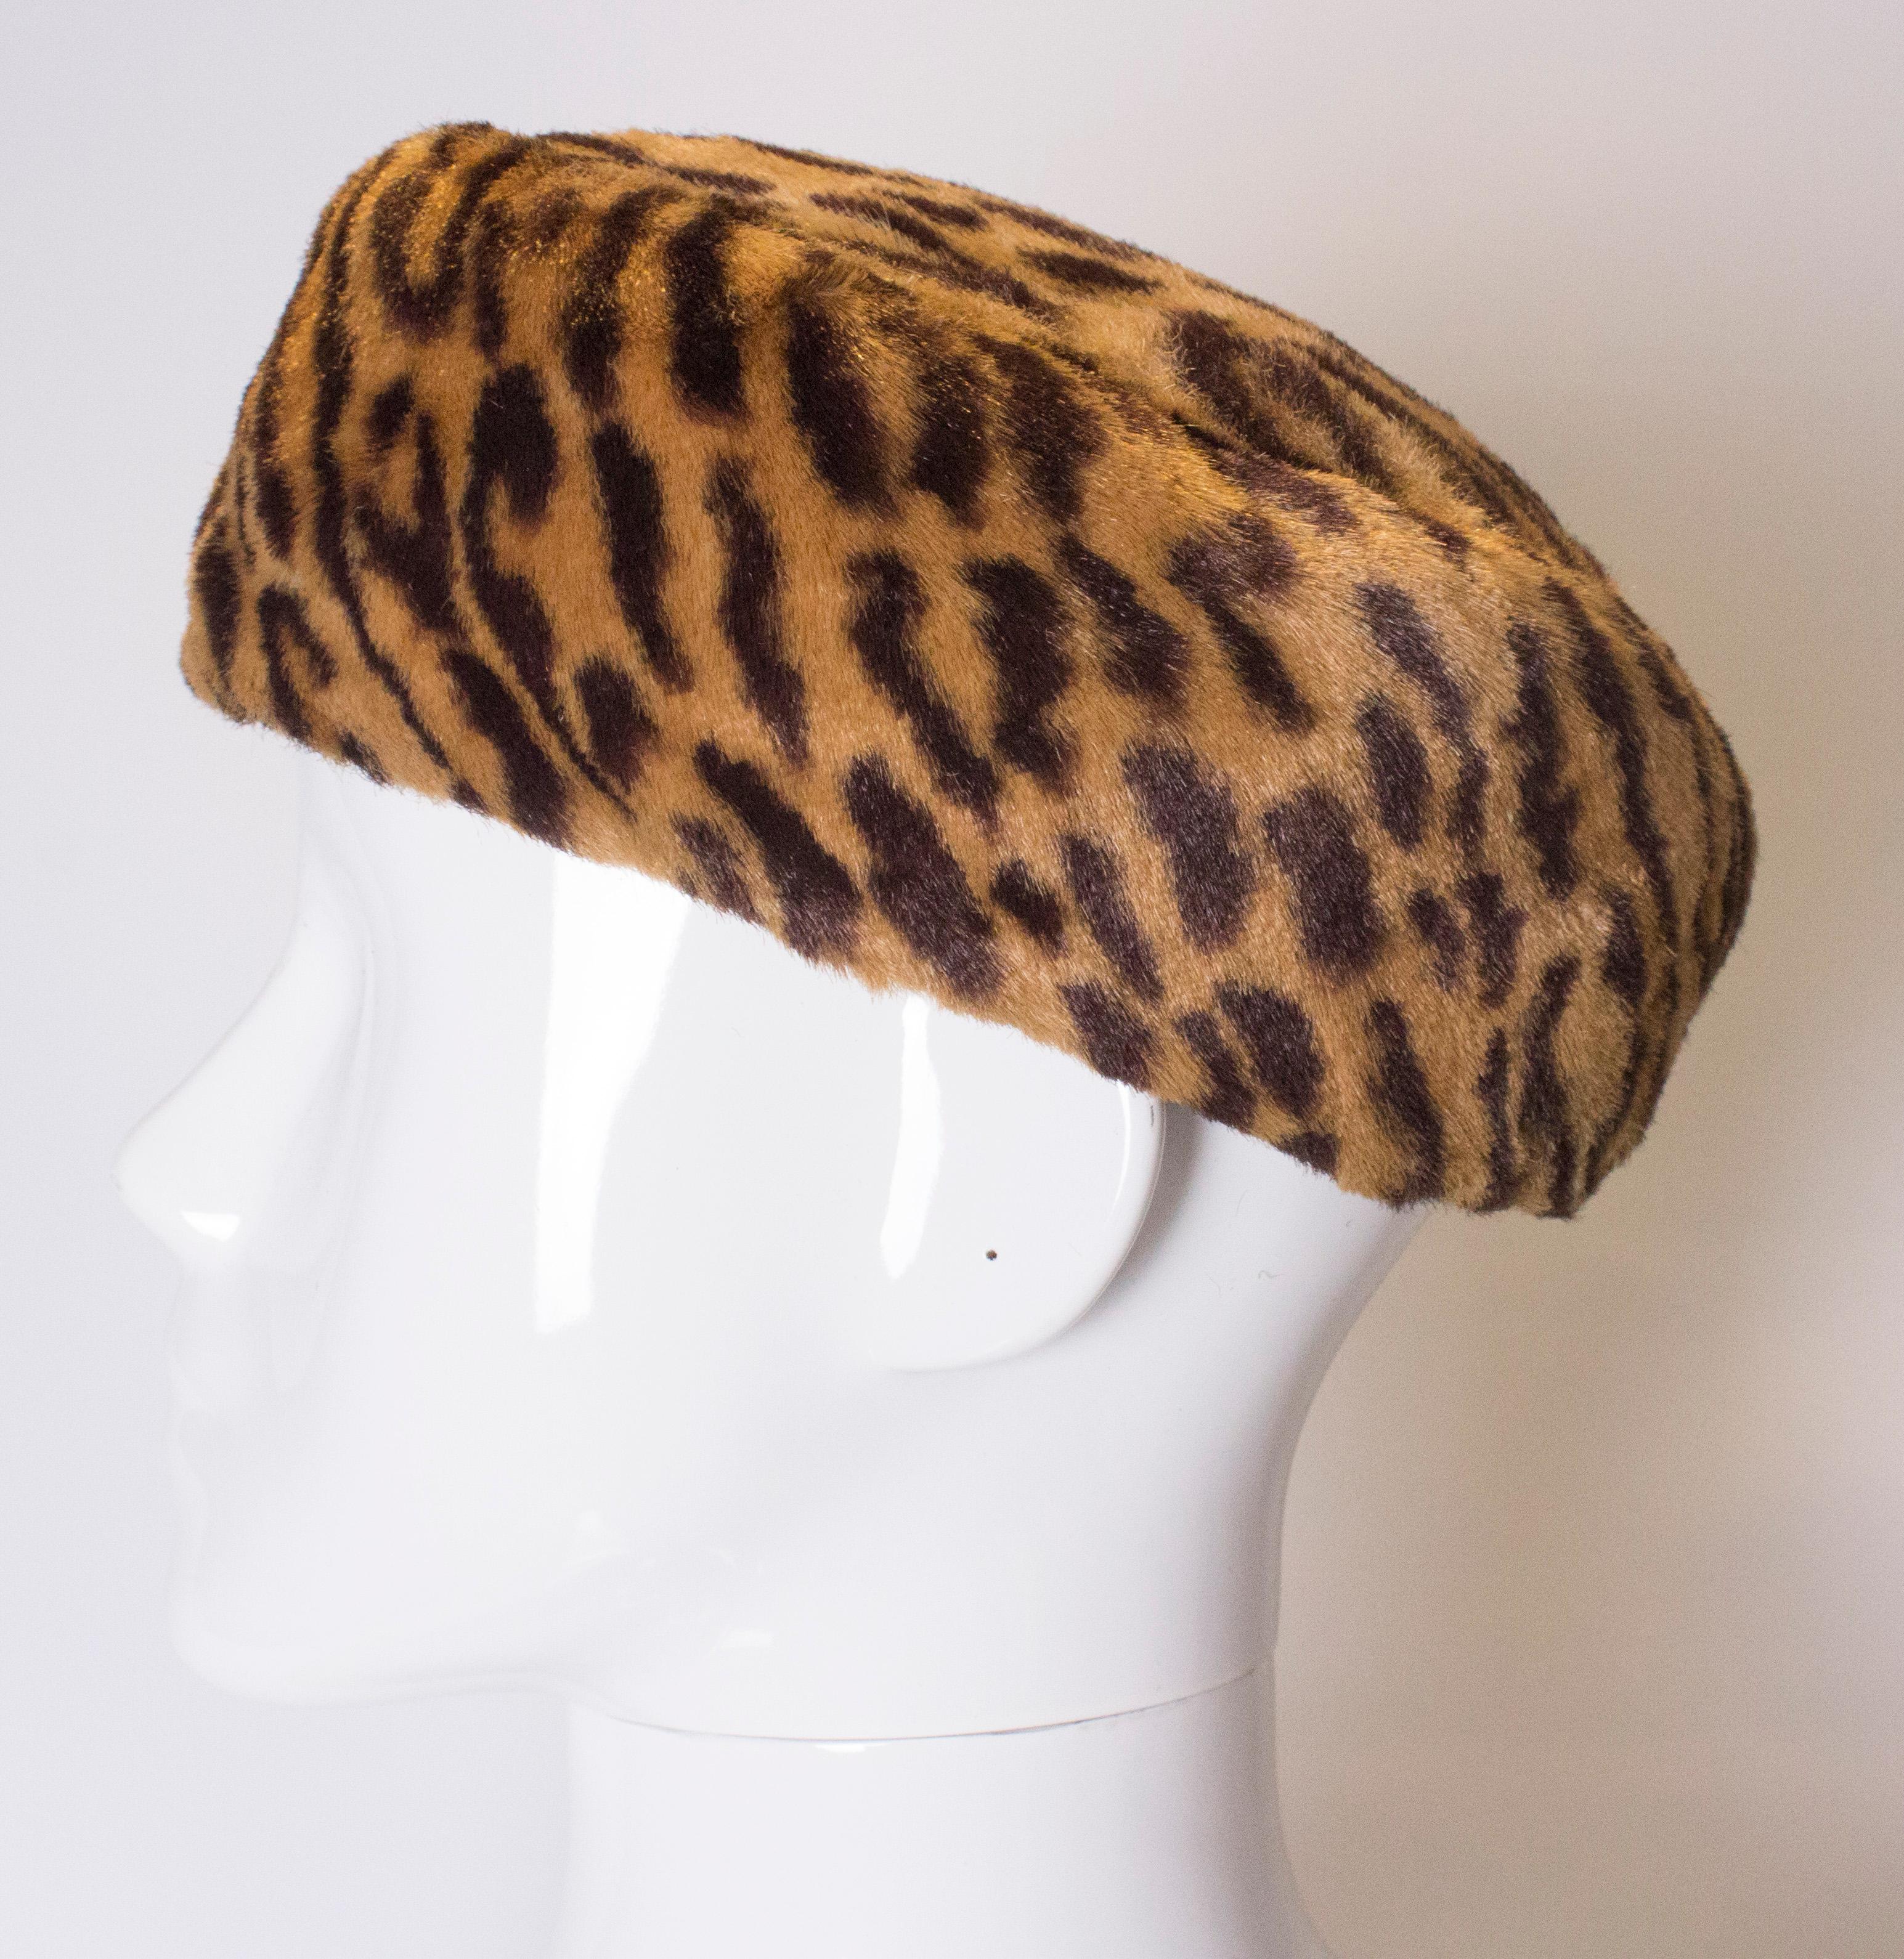 Ein schickes, aufsehenerregendes Kleidungsstück für den Kopf. Der Hut ist mit einem hübschen Tiermuster bedruckt und hat ein elastisches Band.
Höhe 3'', Umfang 23''